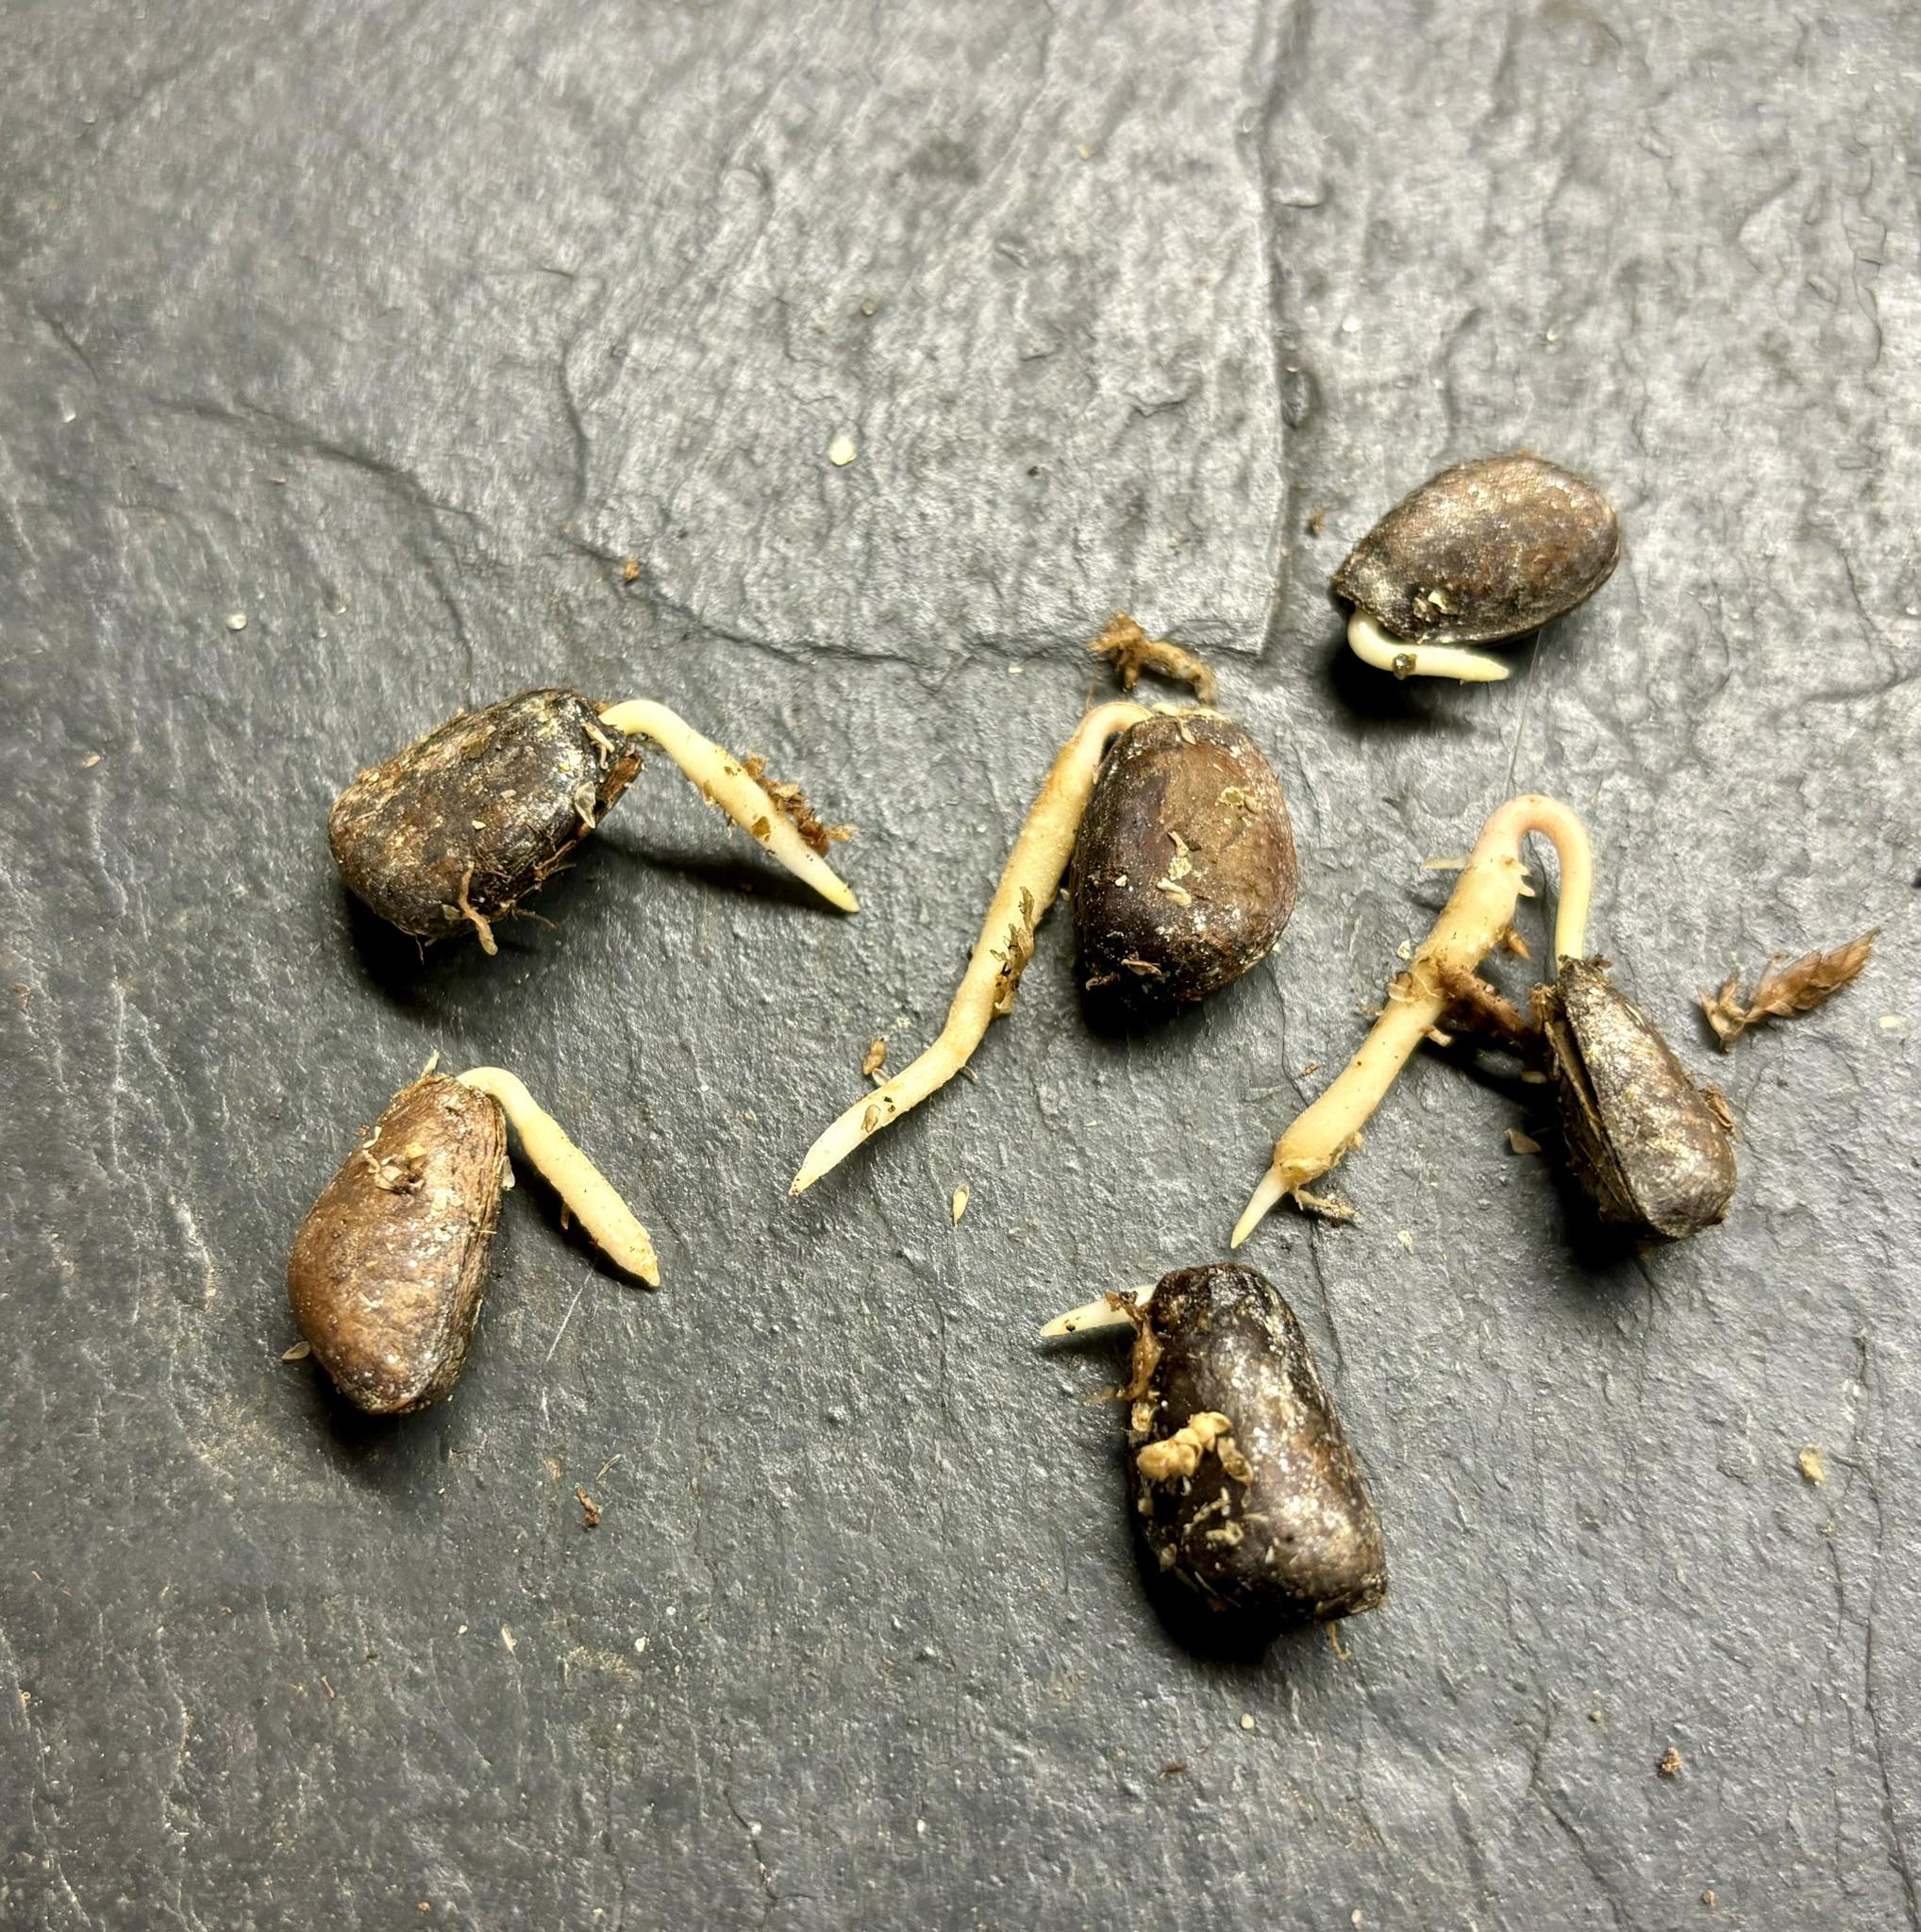 Annona sylvatica - 1 germinated seed / 1 gekeimter Samen